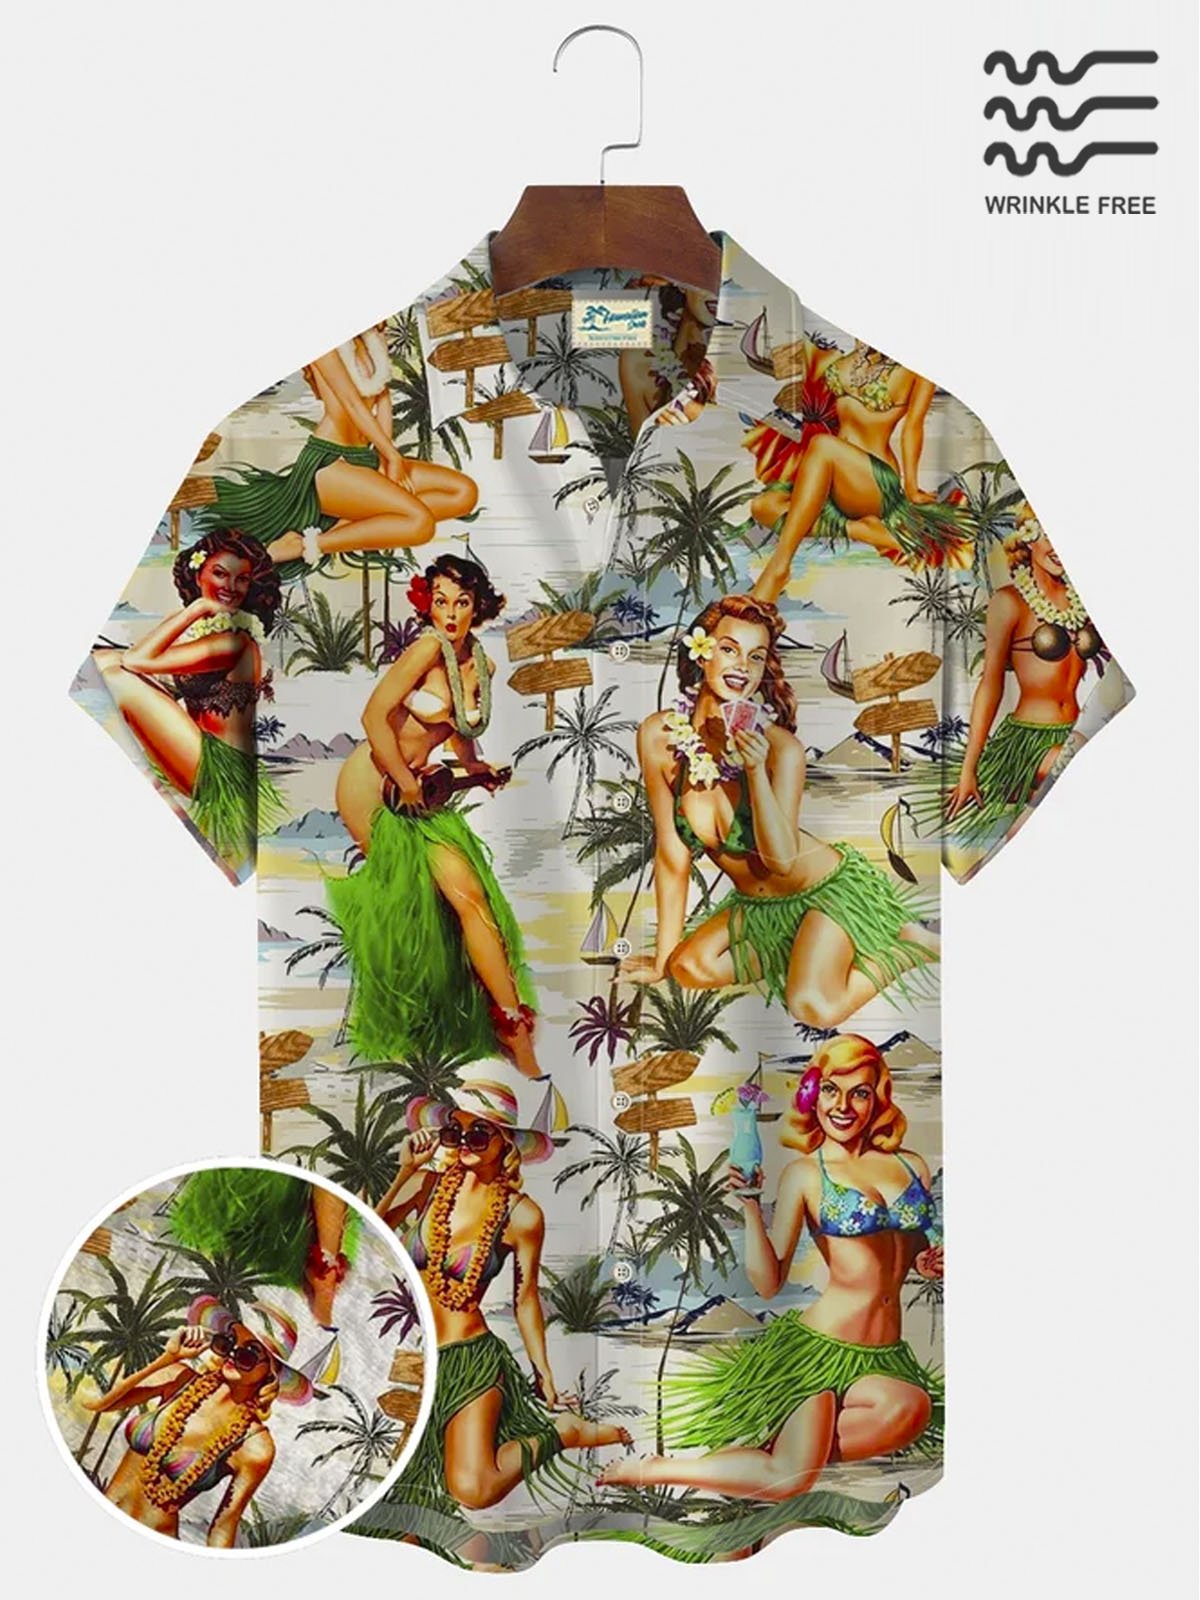 Royaura Vintage Men's Coconut Tree Hula Hawaiian Shirt Oversized Vacation Aloha Wrinkle Free Shirt